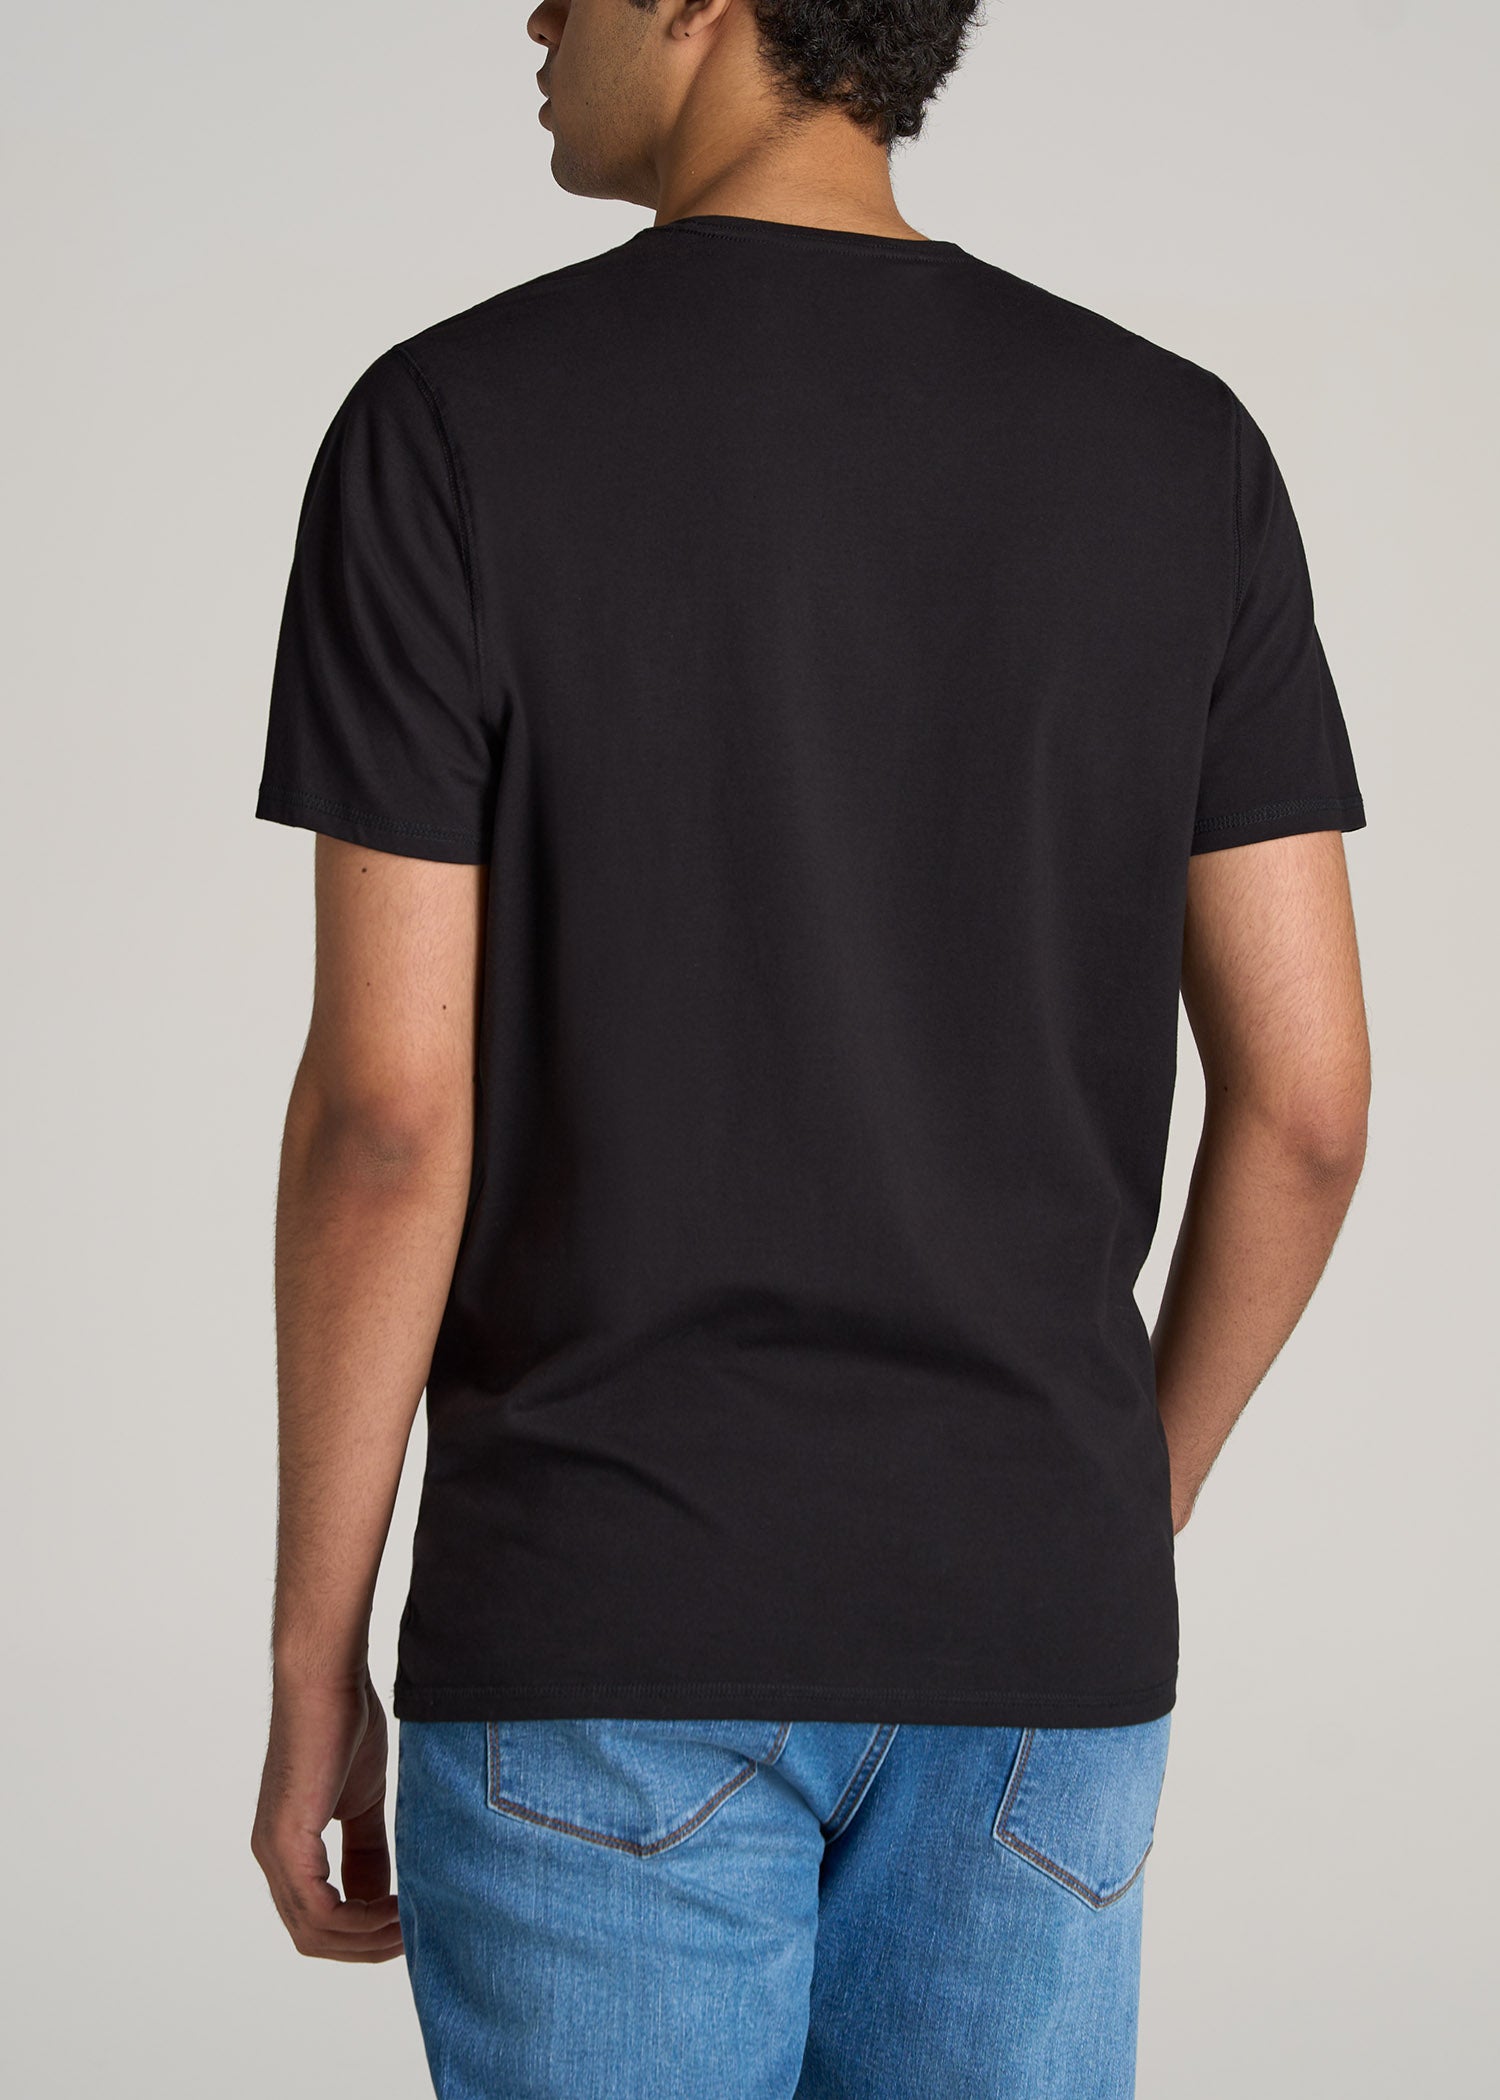 Tall Black T-shirt: Fit Crew Men's Black Tee | American Tall